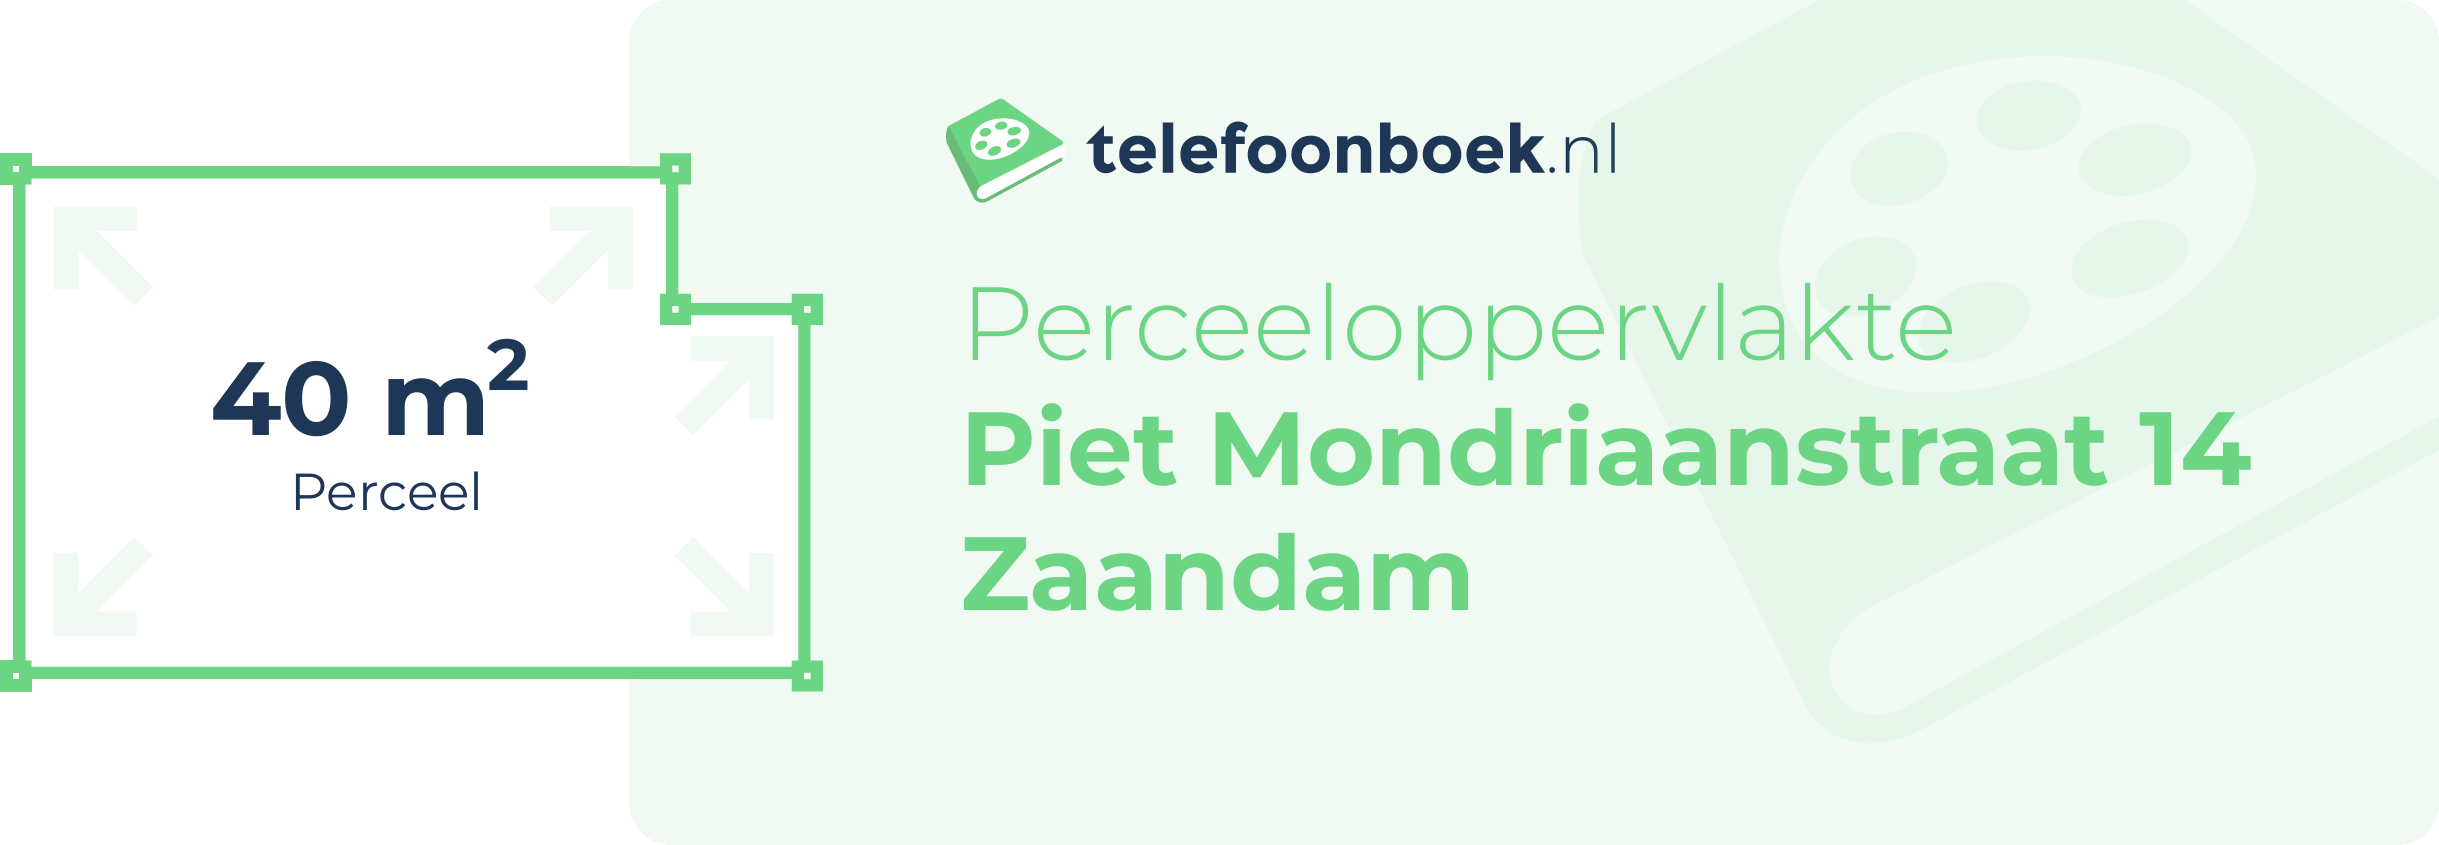 Perceeloppervlakte Piet Mondriaanstraat 14 Zaandam